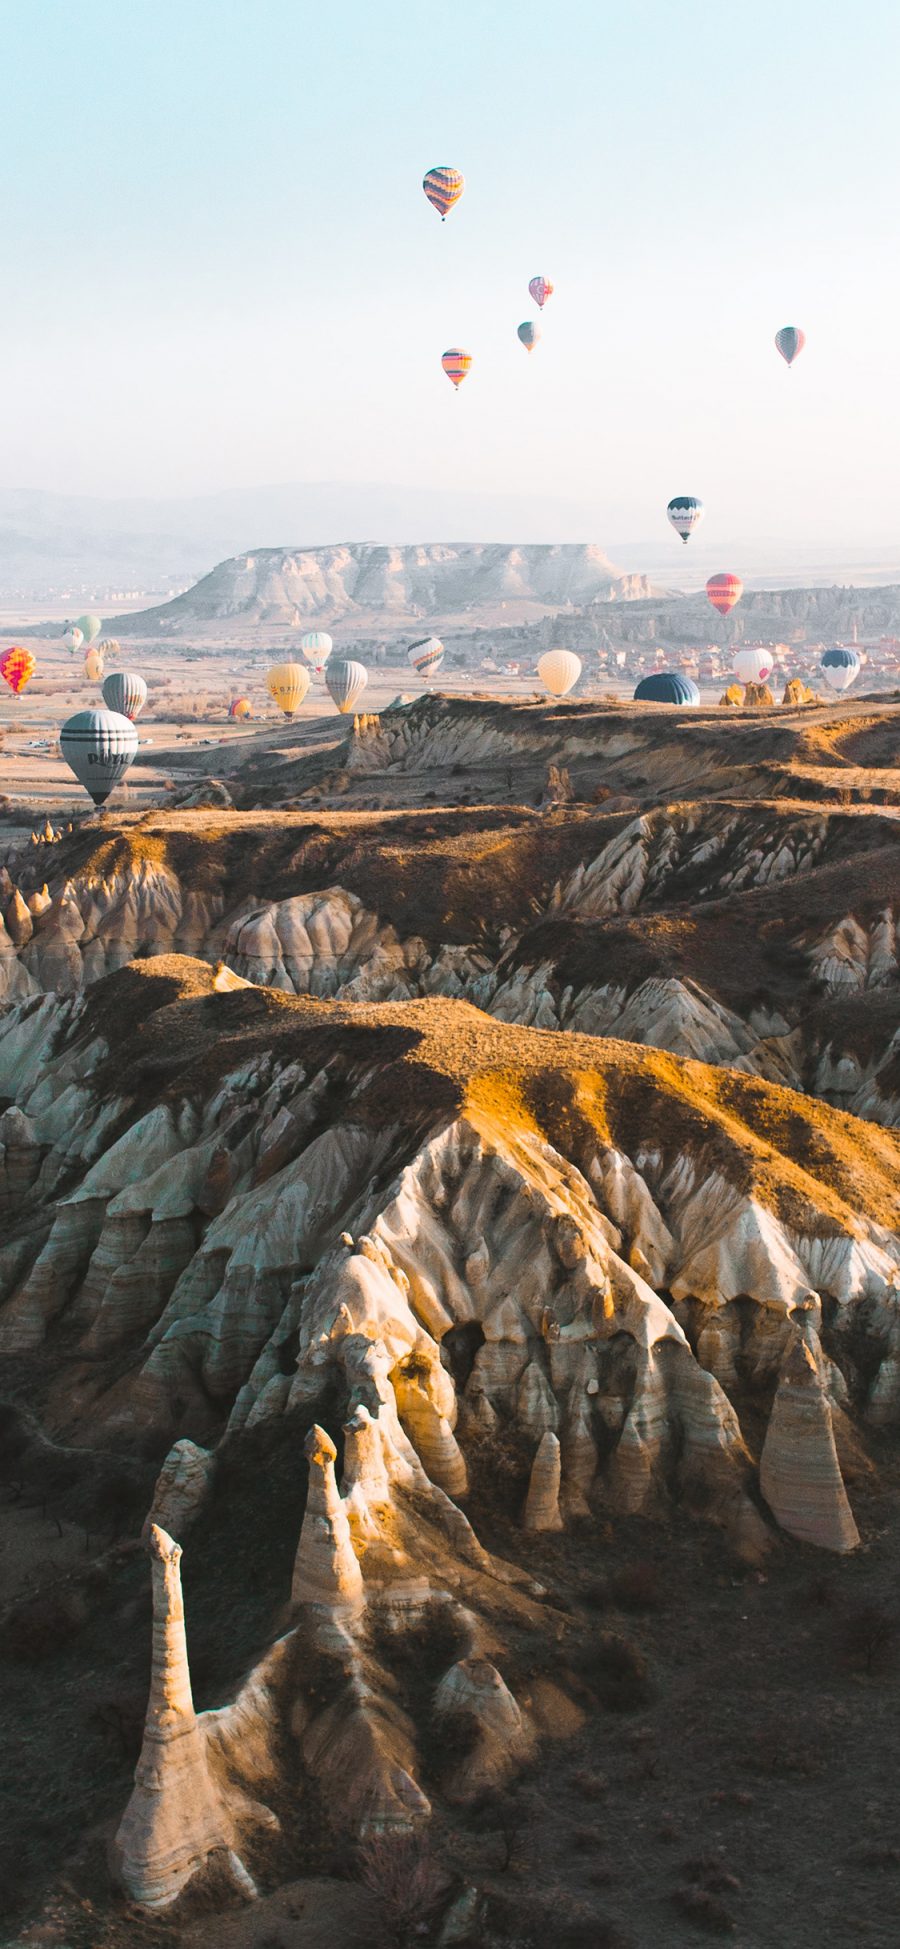 [2436×1125]热气球 飞行 荒漠 地质 旅行 苹果手机壁纸图片